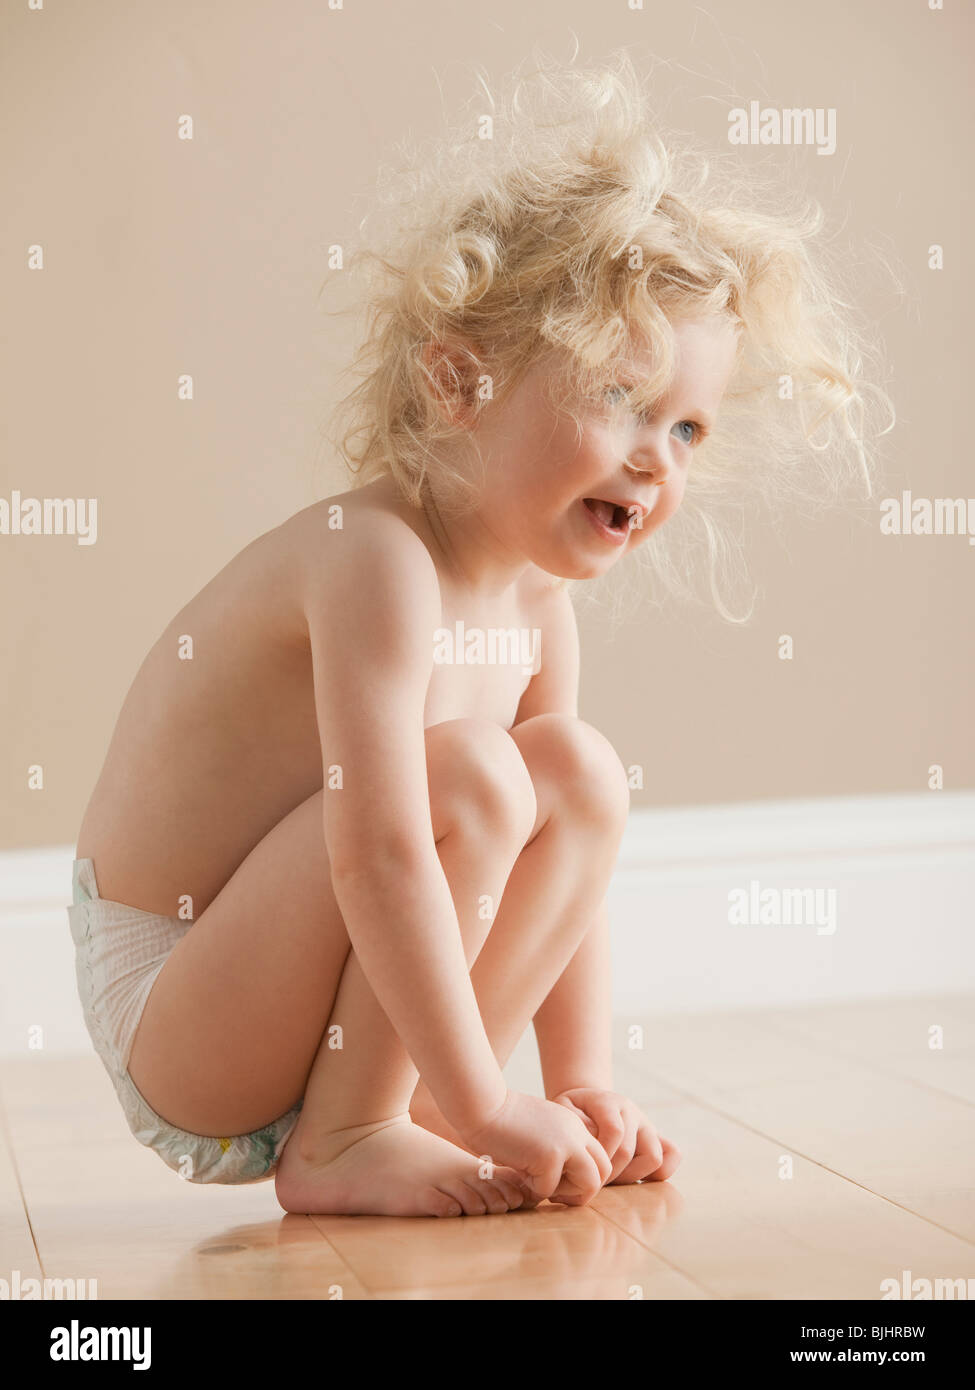 Kid in diaper Stock Photo